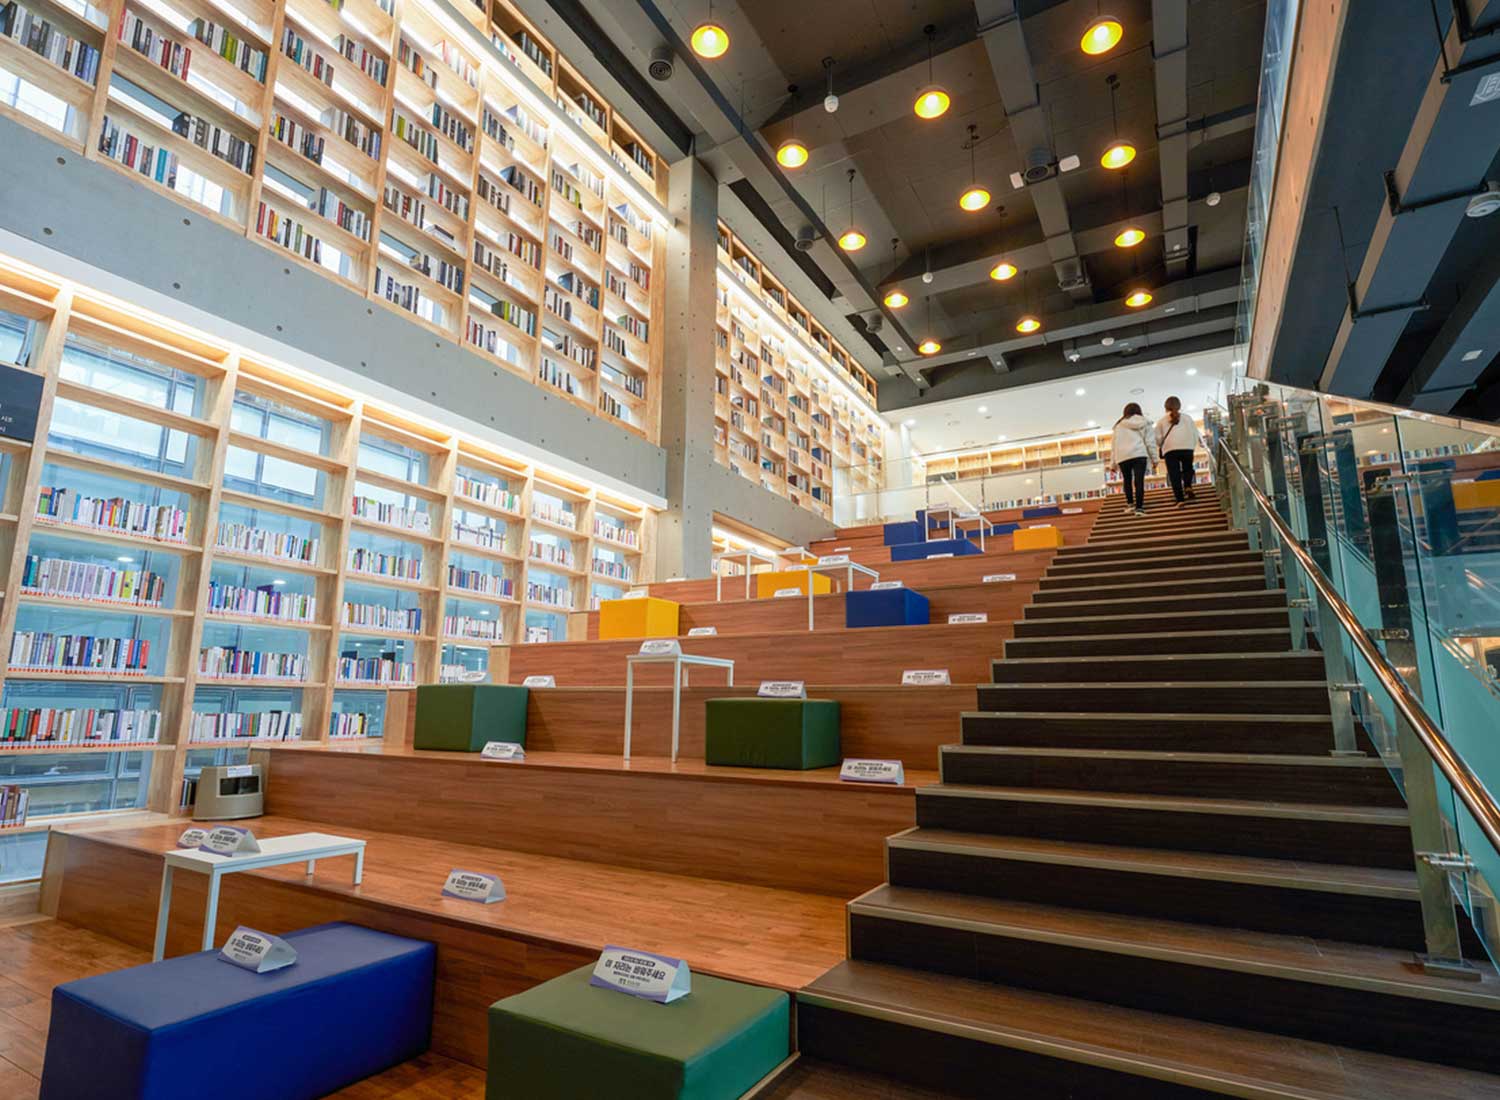 釜山图书馆阶梯式座席区域